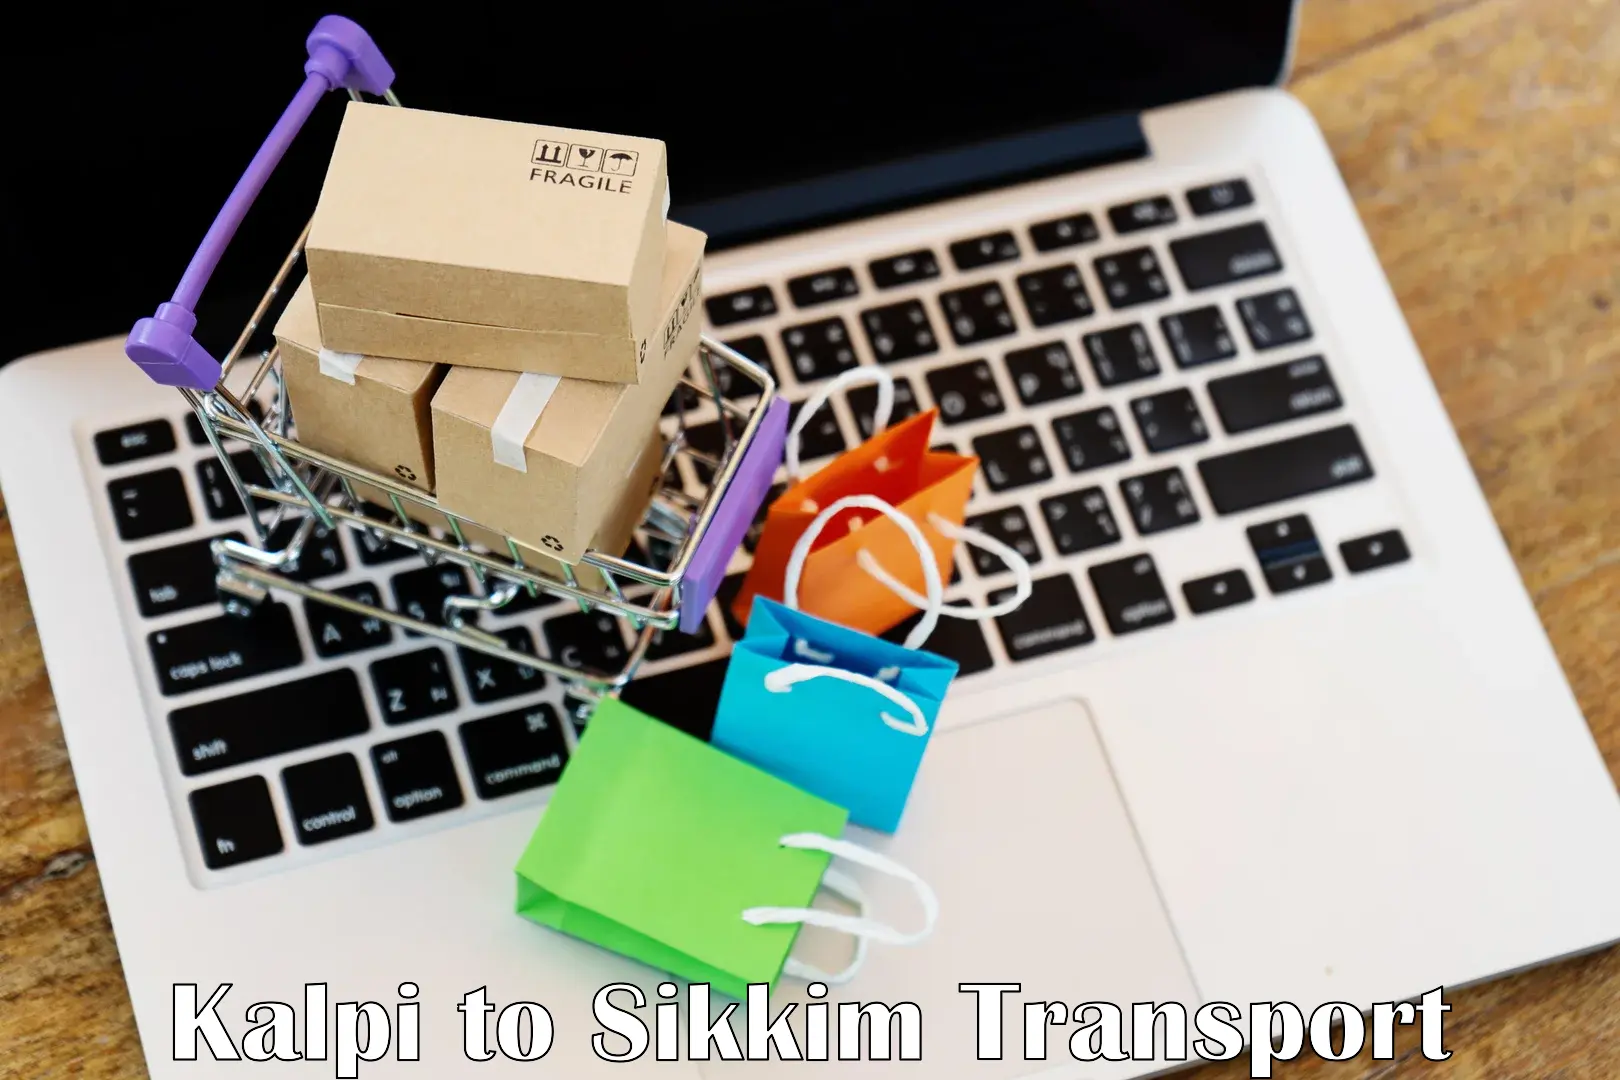 Intercity transport Kalpi to South Sikkim